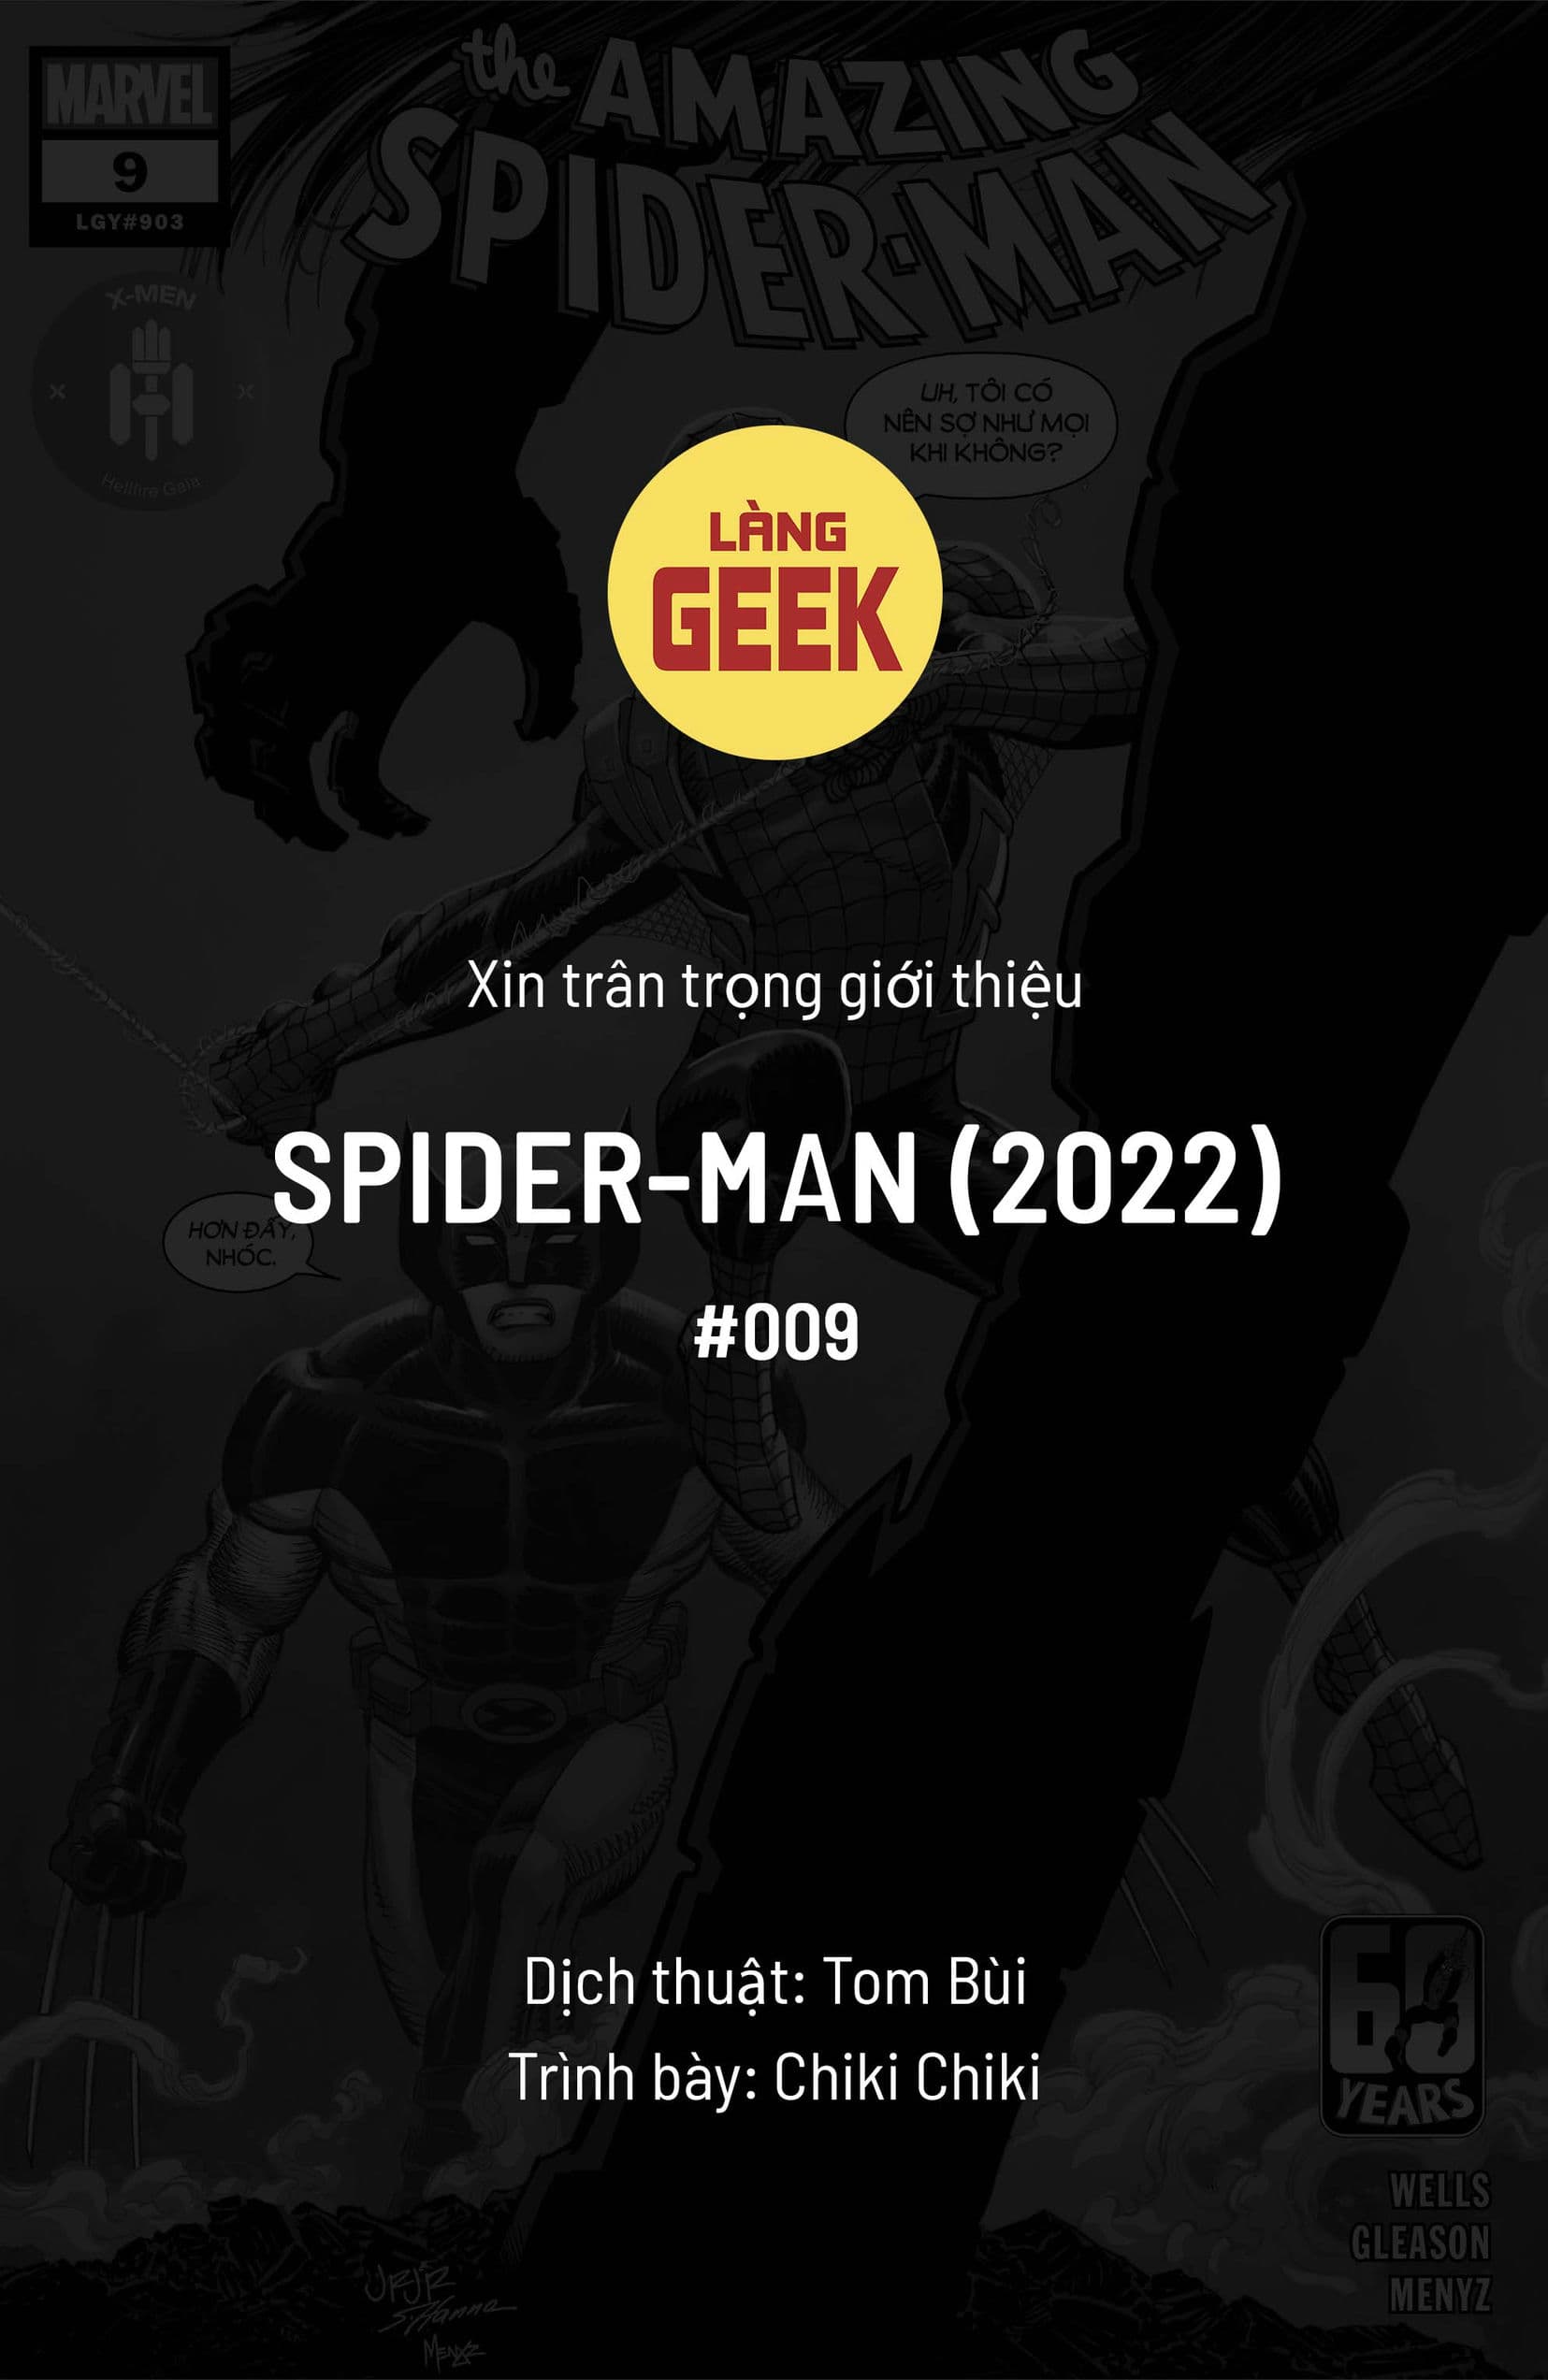 https://langgeek.net/wp-content/webpc-passthru.php?src=https://langgeek.net/wp-content/uploads/2023/08/Amazing-Spider-Man-2022-009-000-1.jpg&nocache=1